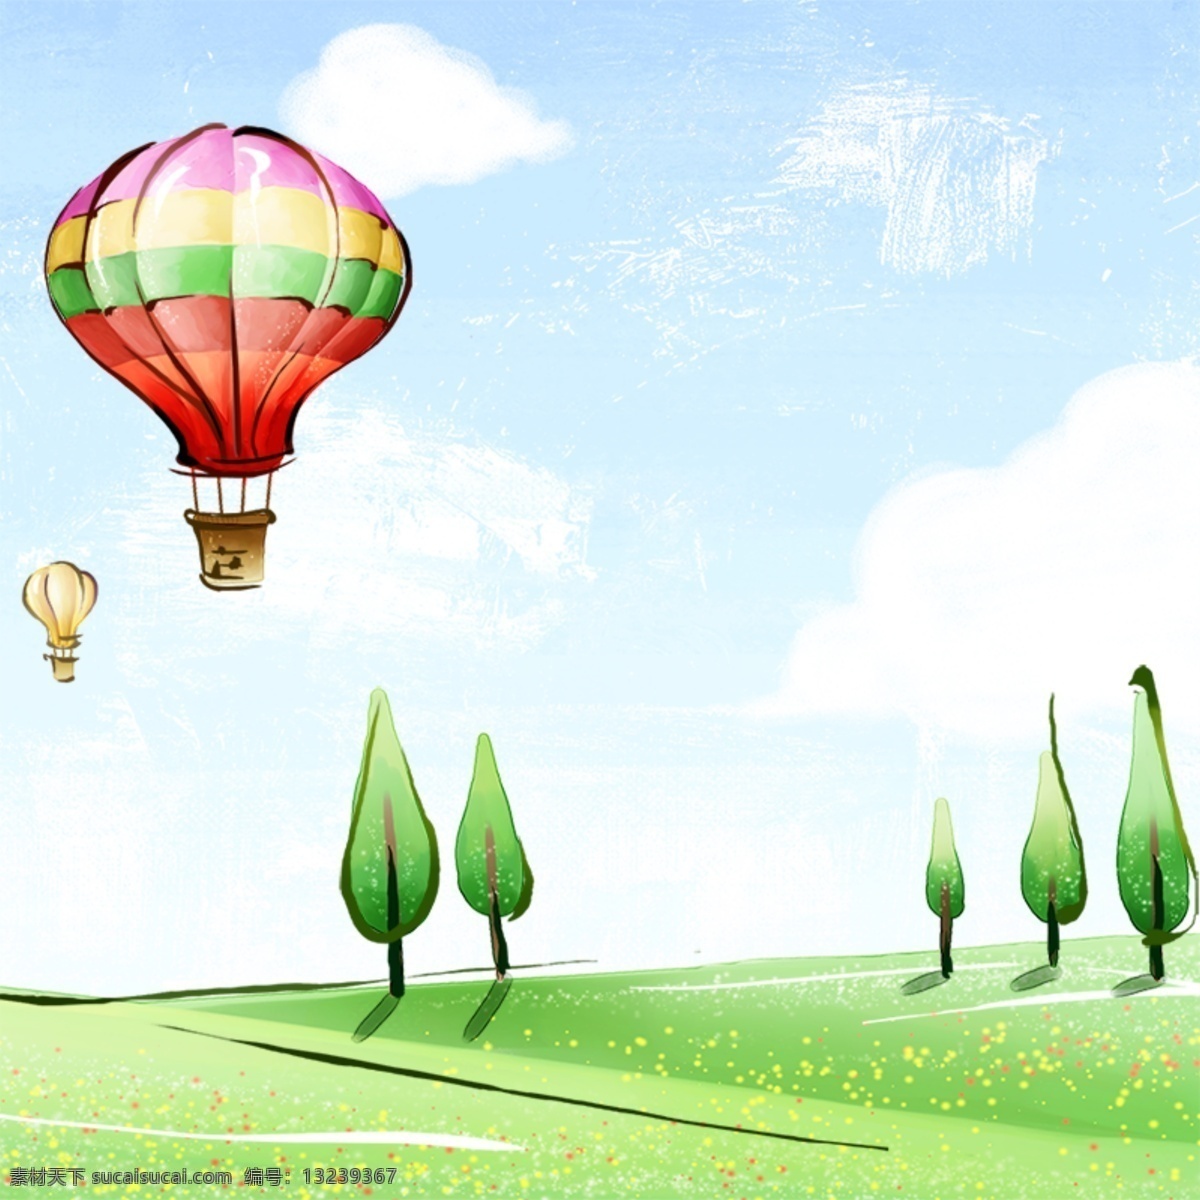 手绘春季背景 热气球 树木 手绘背景 卡通背景 春季 白色